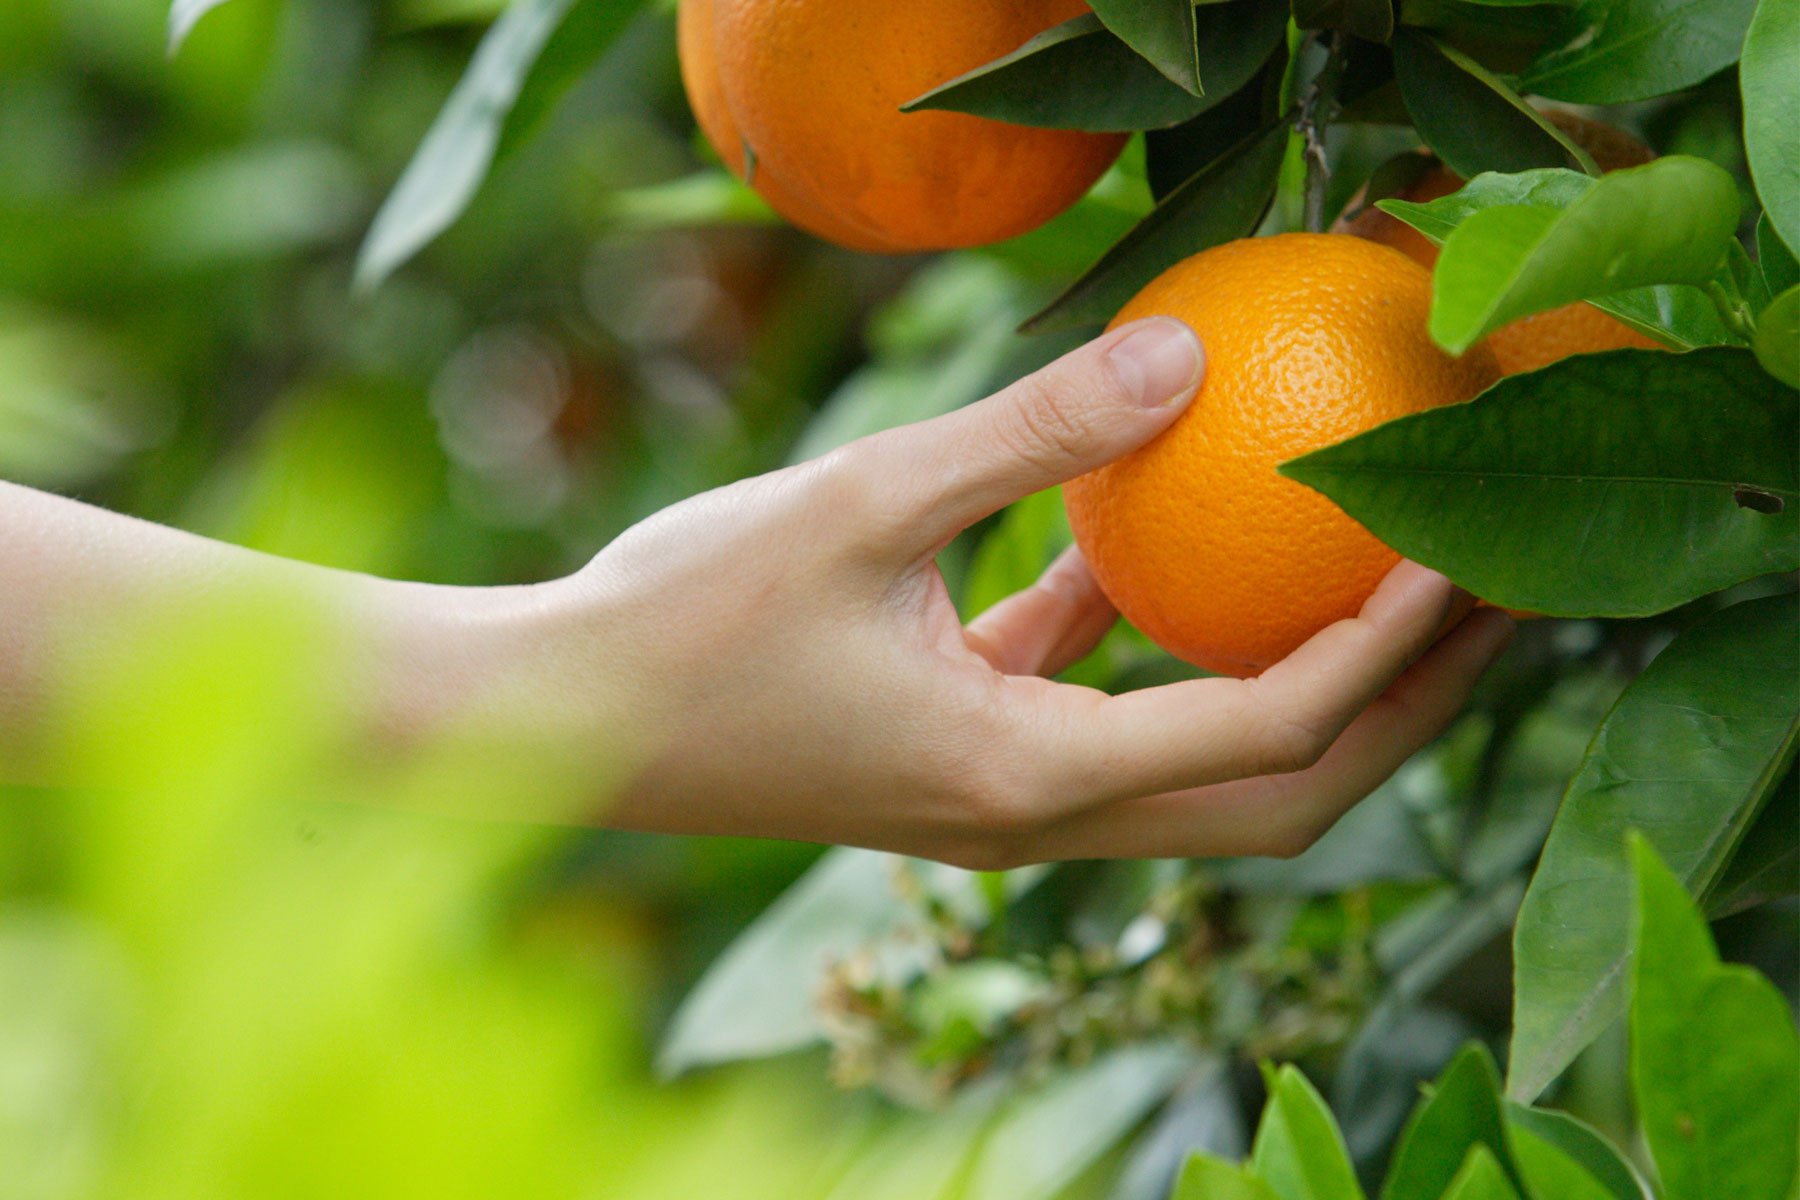 La mano de una persona cogiendo una naranja directamente del árbol.